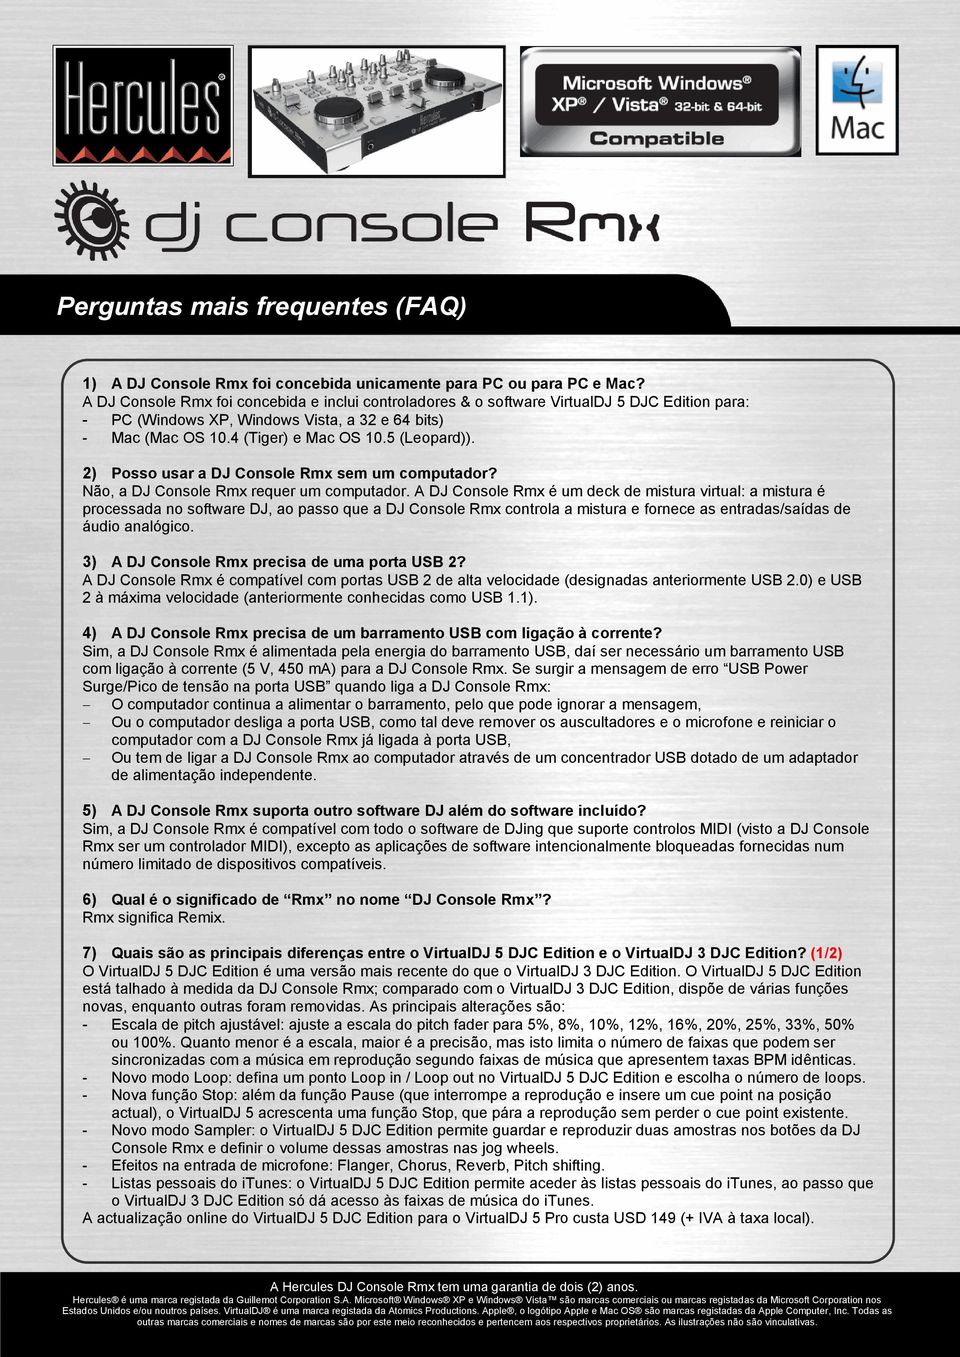 2) Posso usar a DJ Console Rmx sem um computador? Não, a DJ Console Rmx requer um computador.